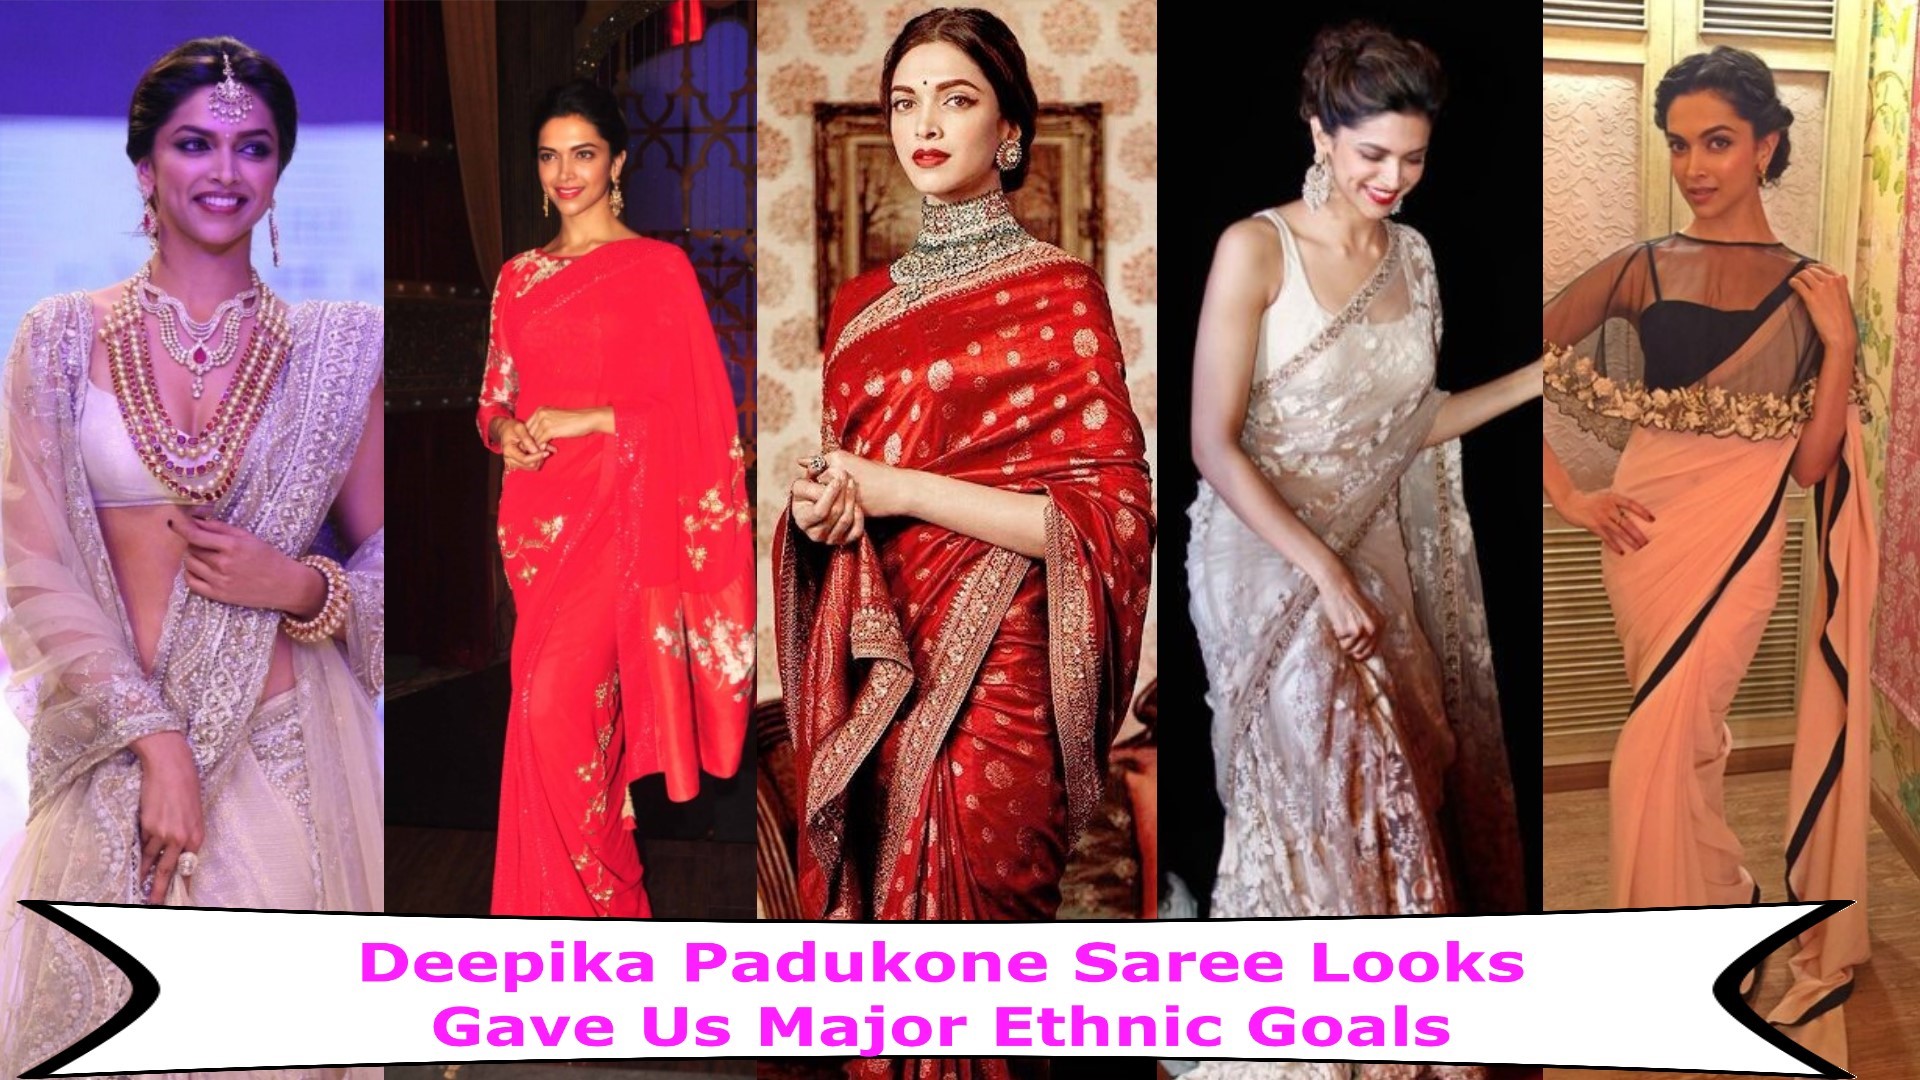 Deepika Padukone Saree Looks Gave Us Major Saree Goals 